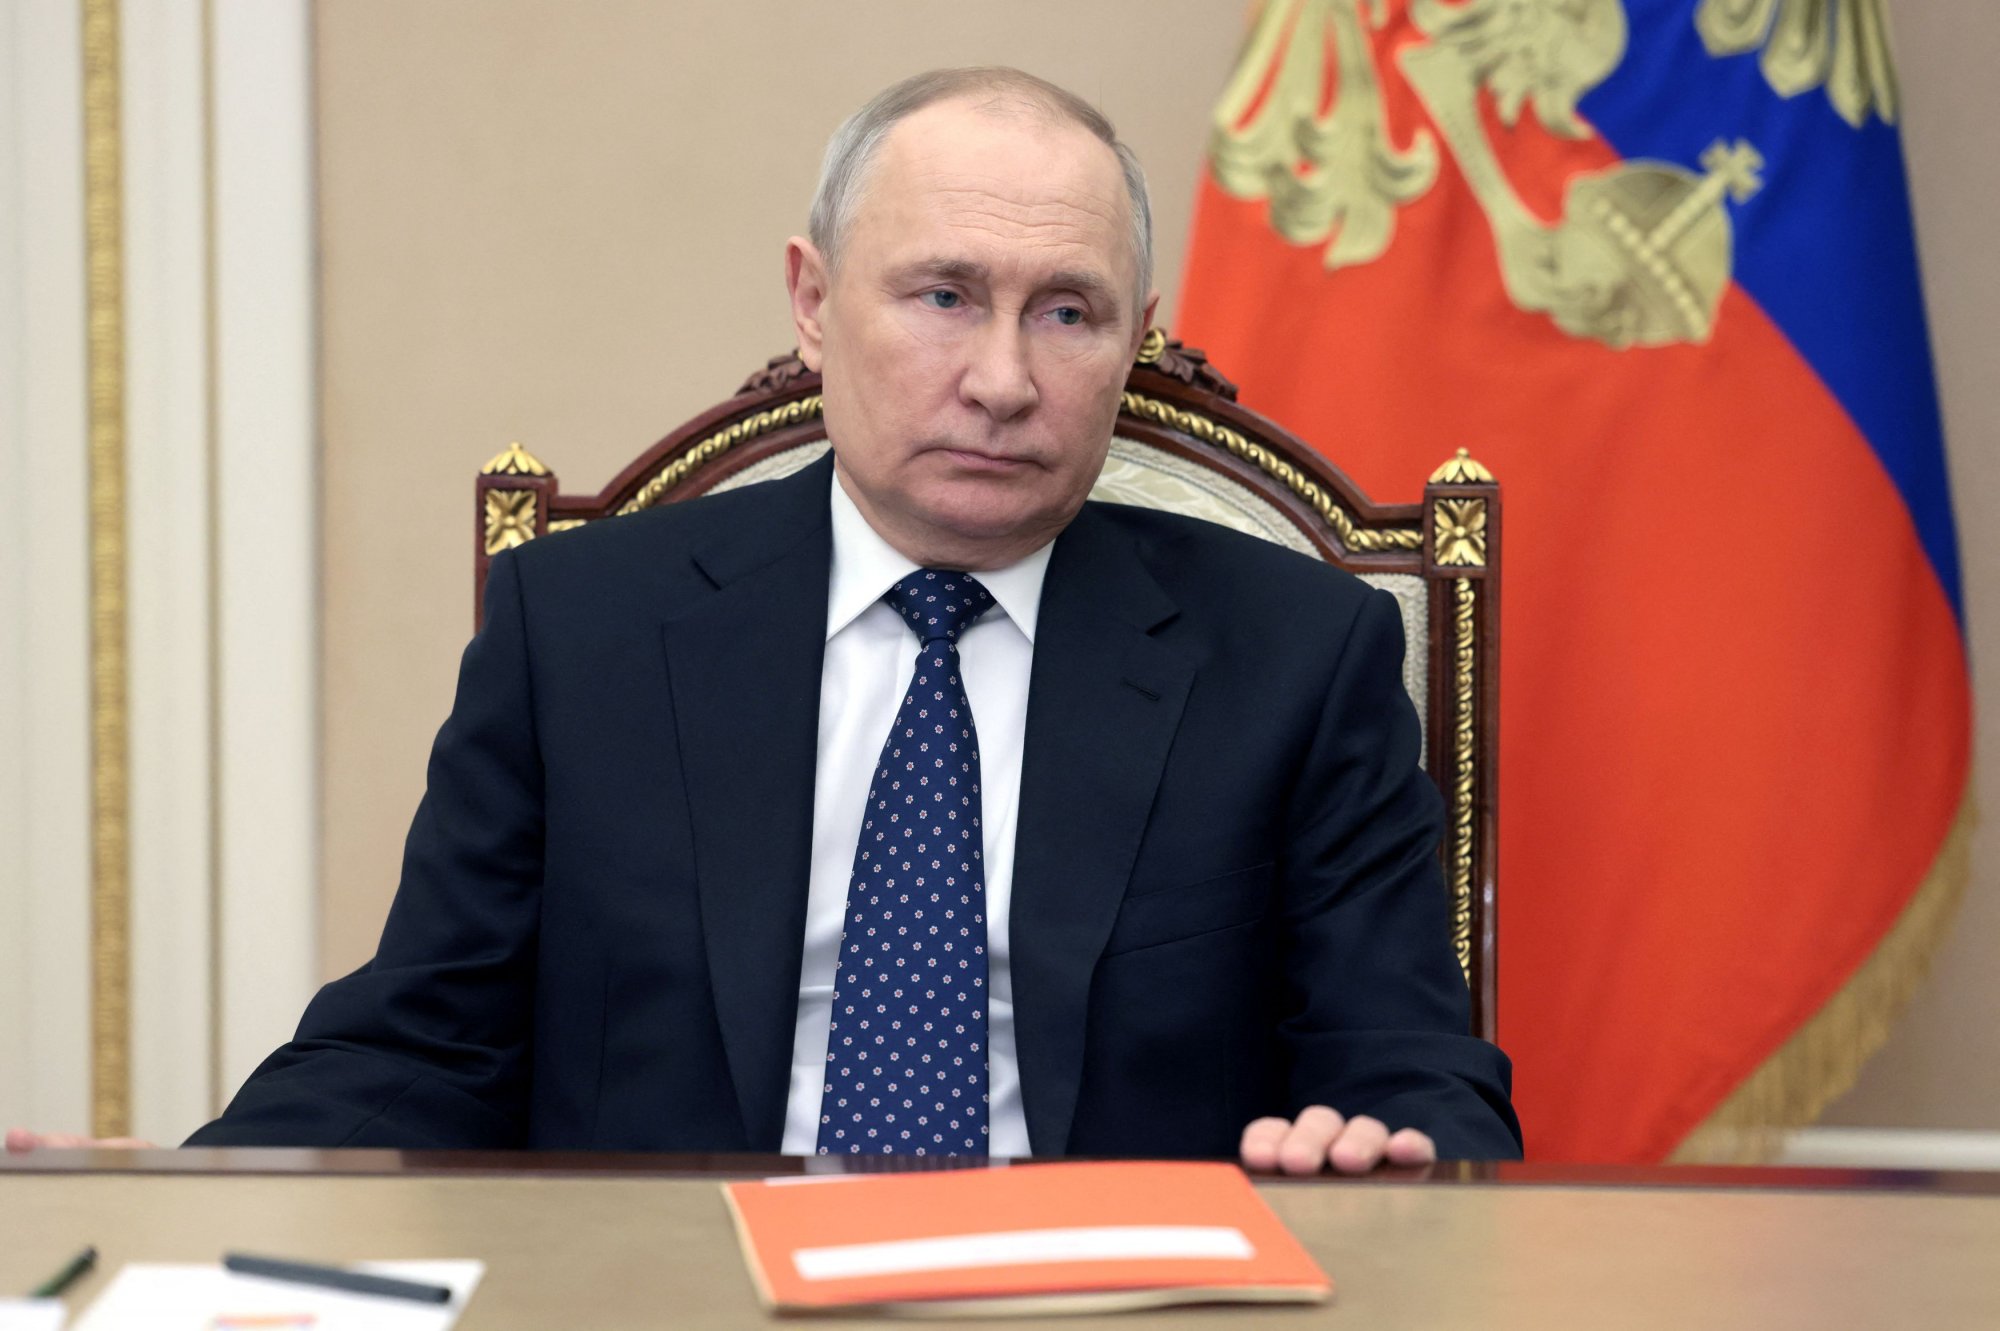 Βλαντιμίρ Πούτιν: Τι θα κάνει η Δύση με την ορκωμοσία του; - Κίεβο: Μην τον αναγνωρίζετε νόμιμο πρόεδρο